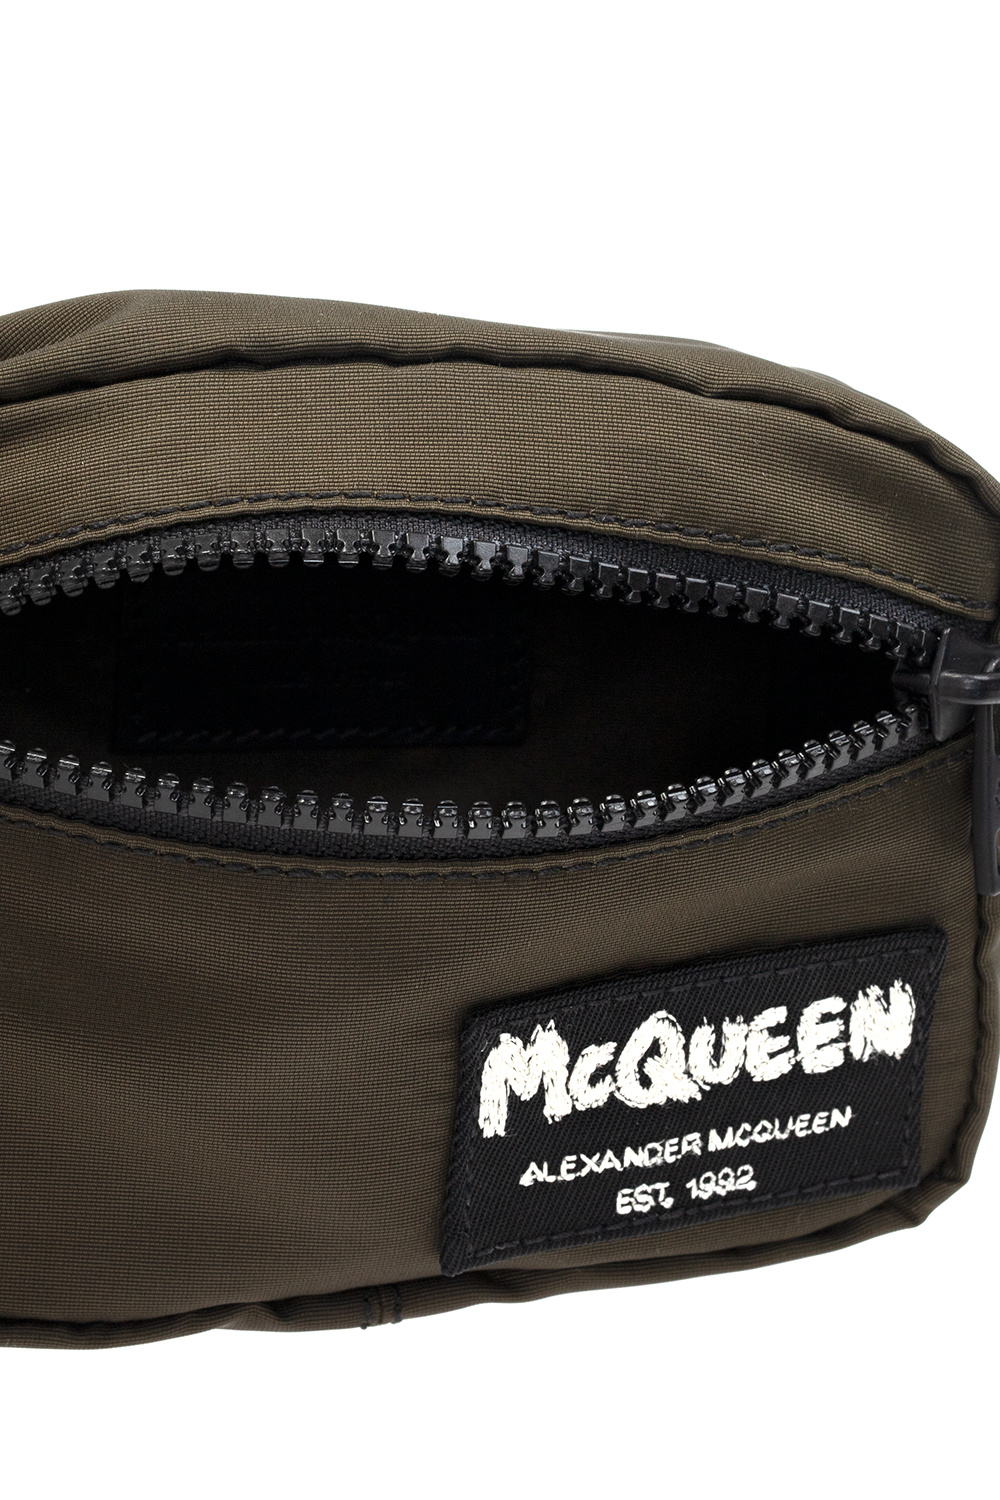 Alexander McQueen alexander mcqueen double breasted wool blend coat